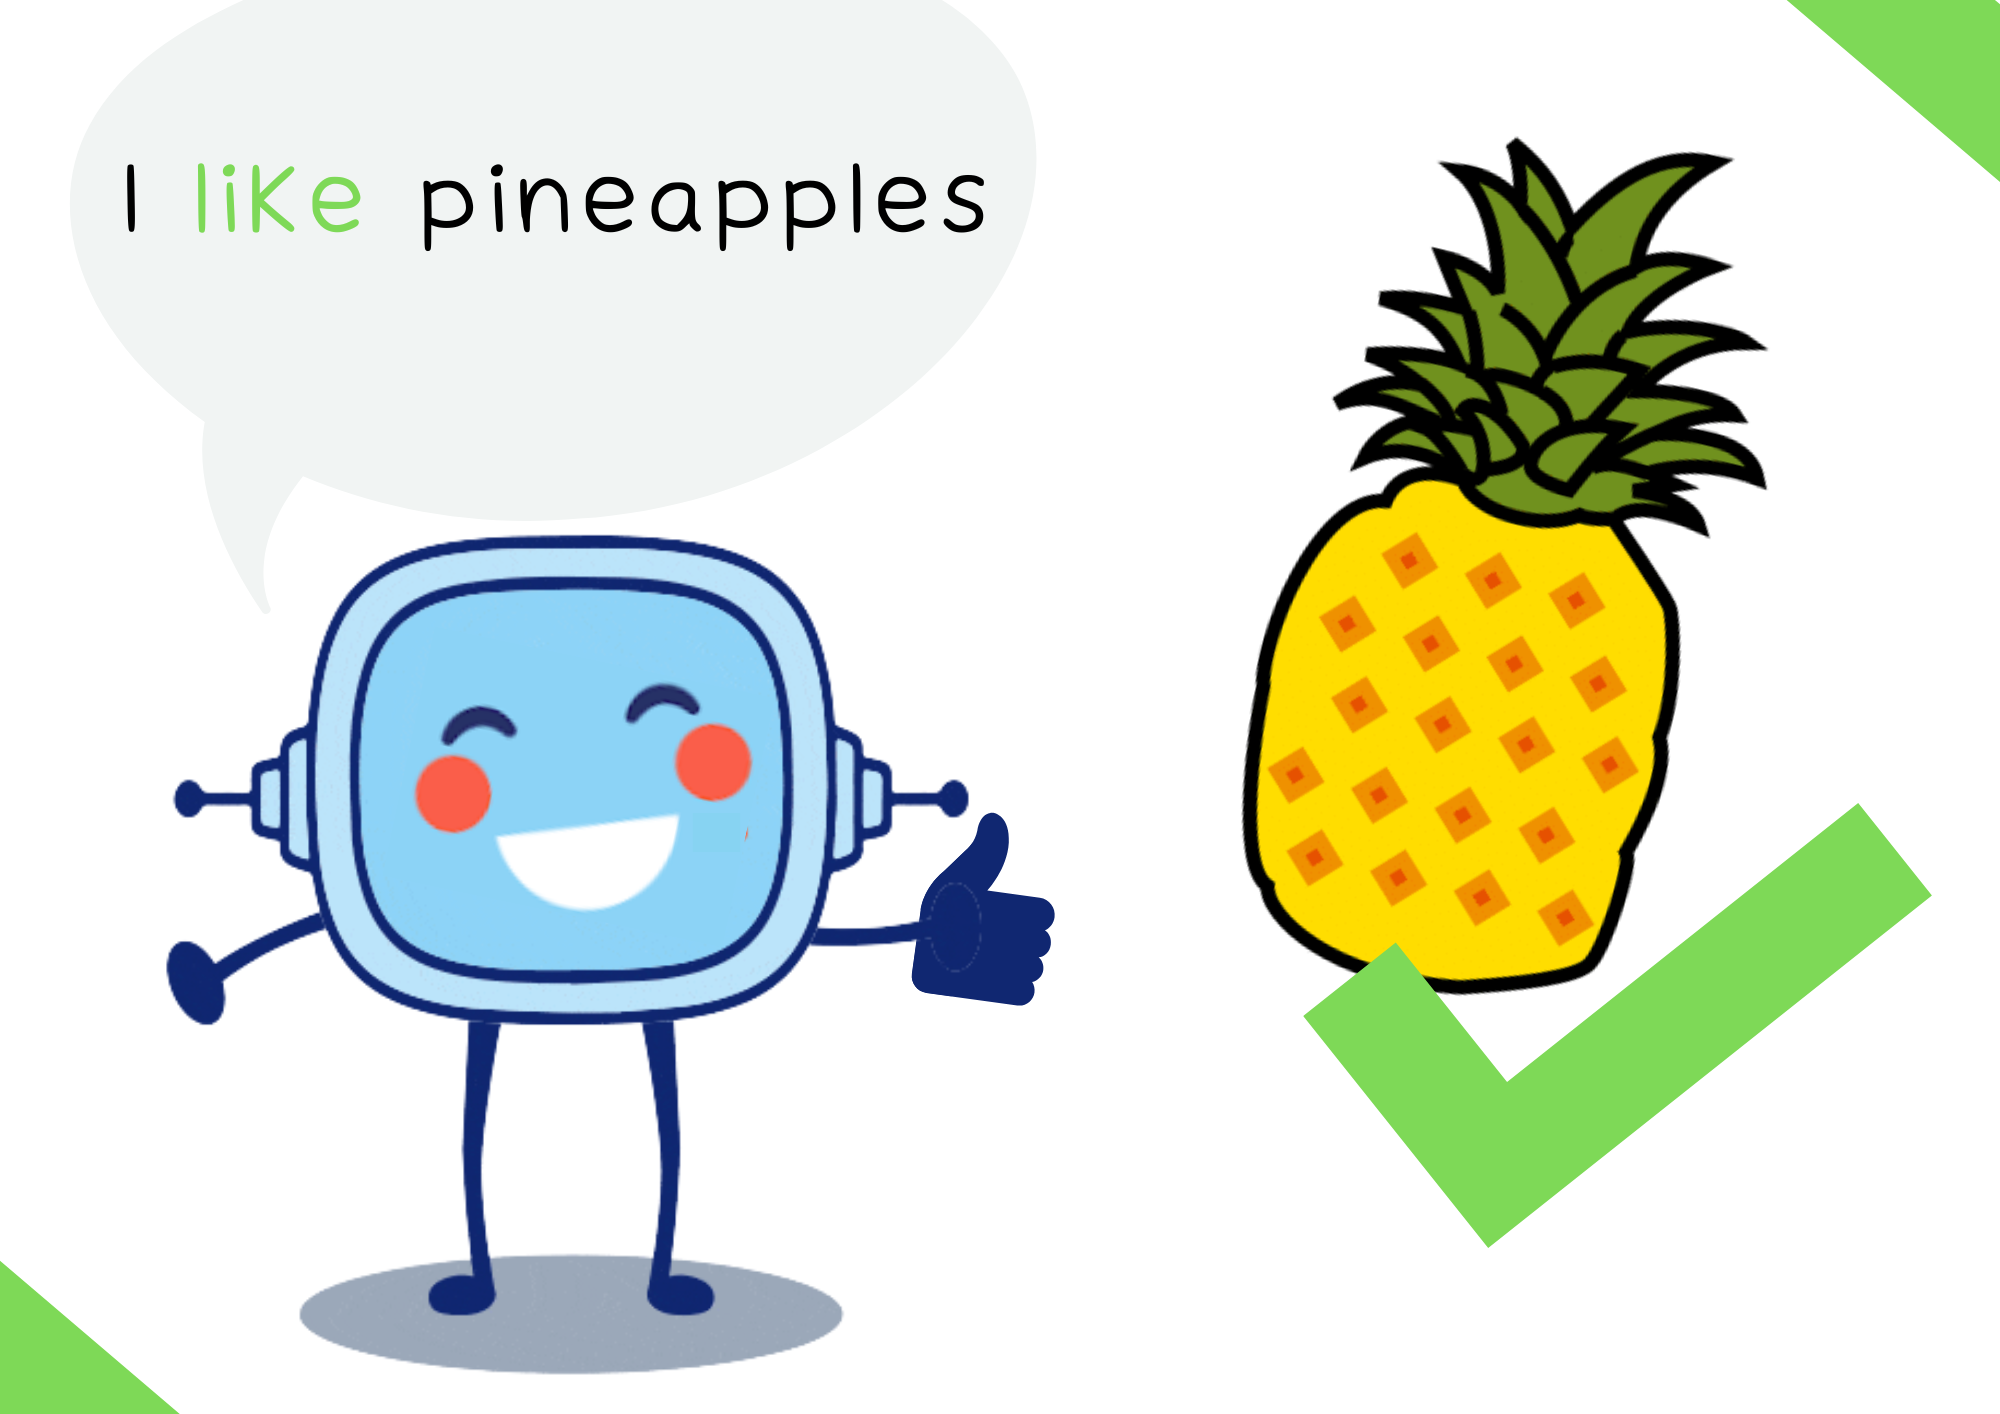 La imagen muestra a Retor diciendo “I like pineapples”, además vemos una piña con un “tick” por encima.